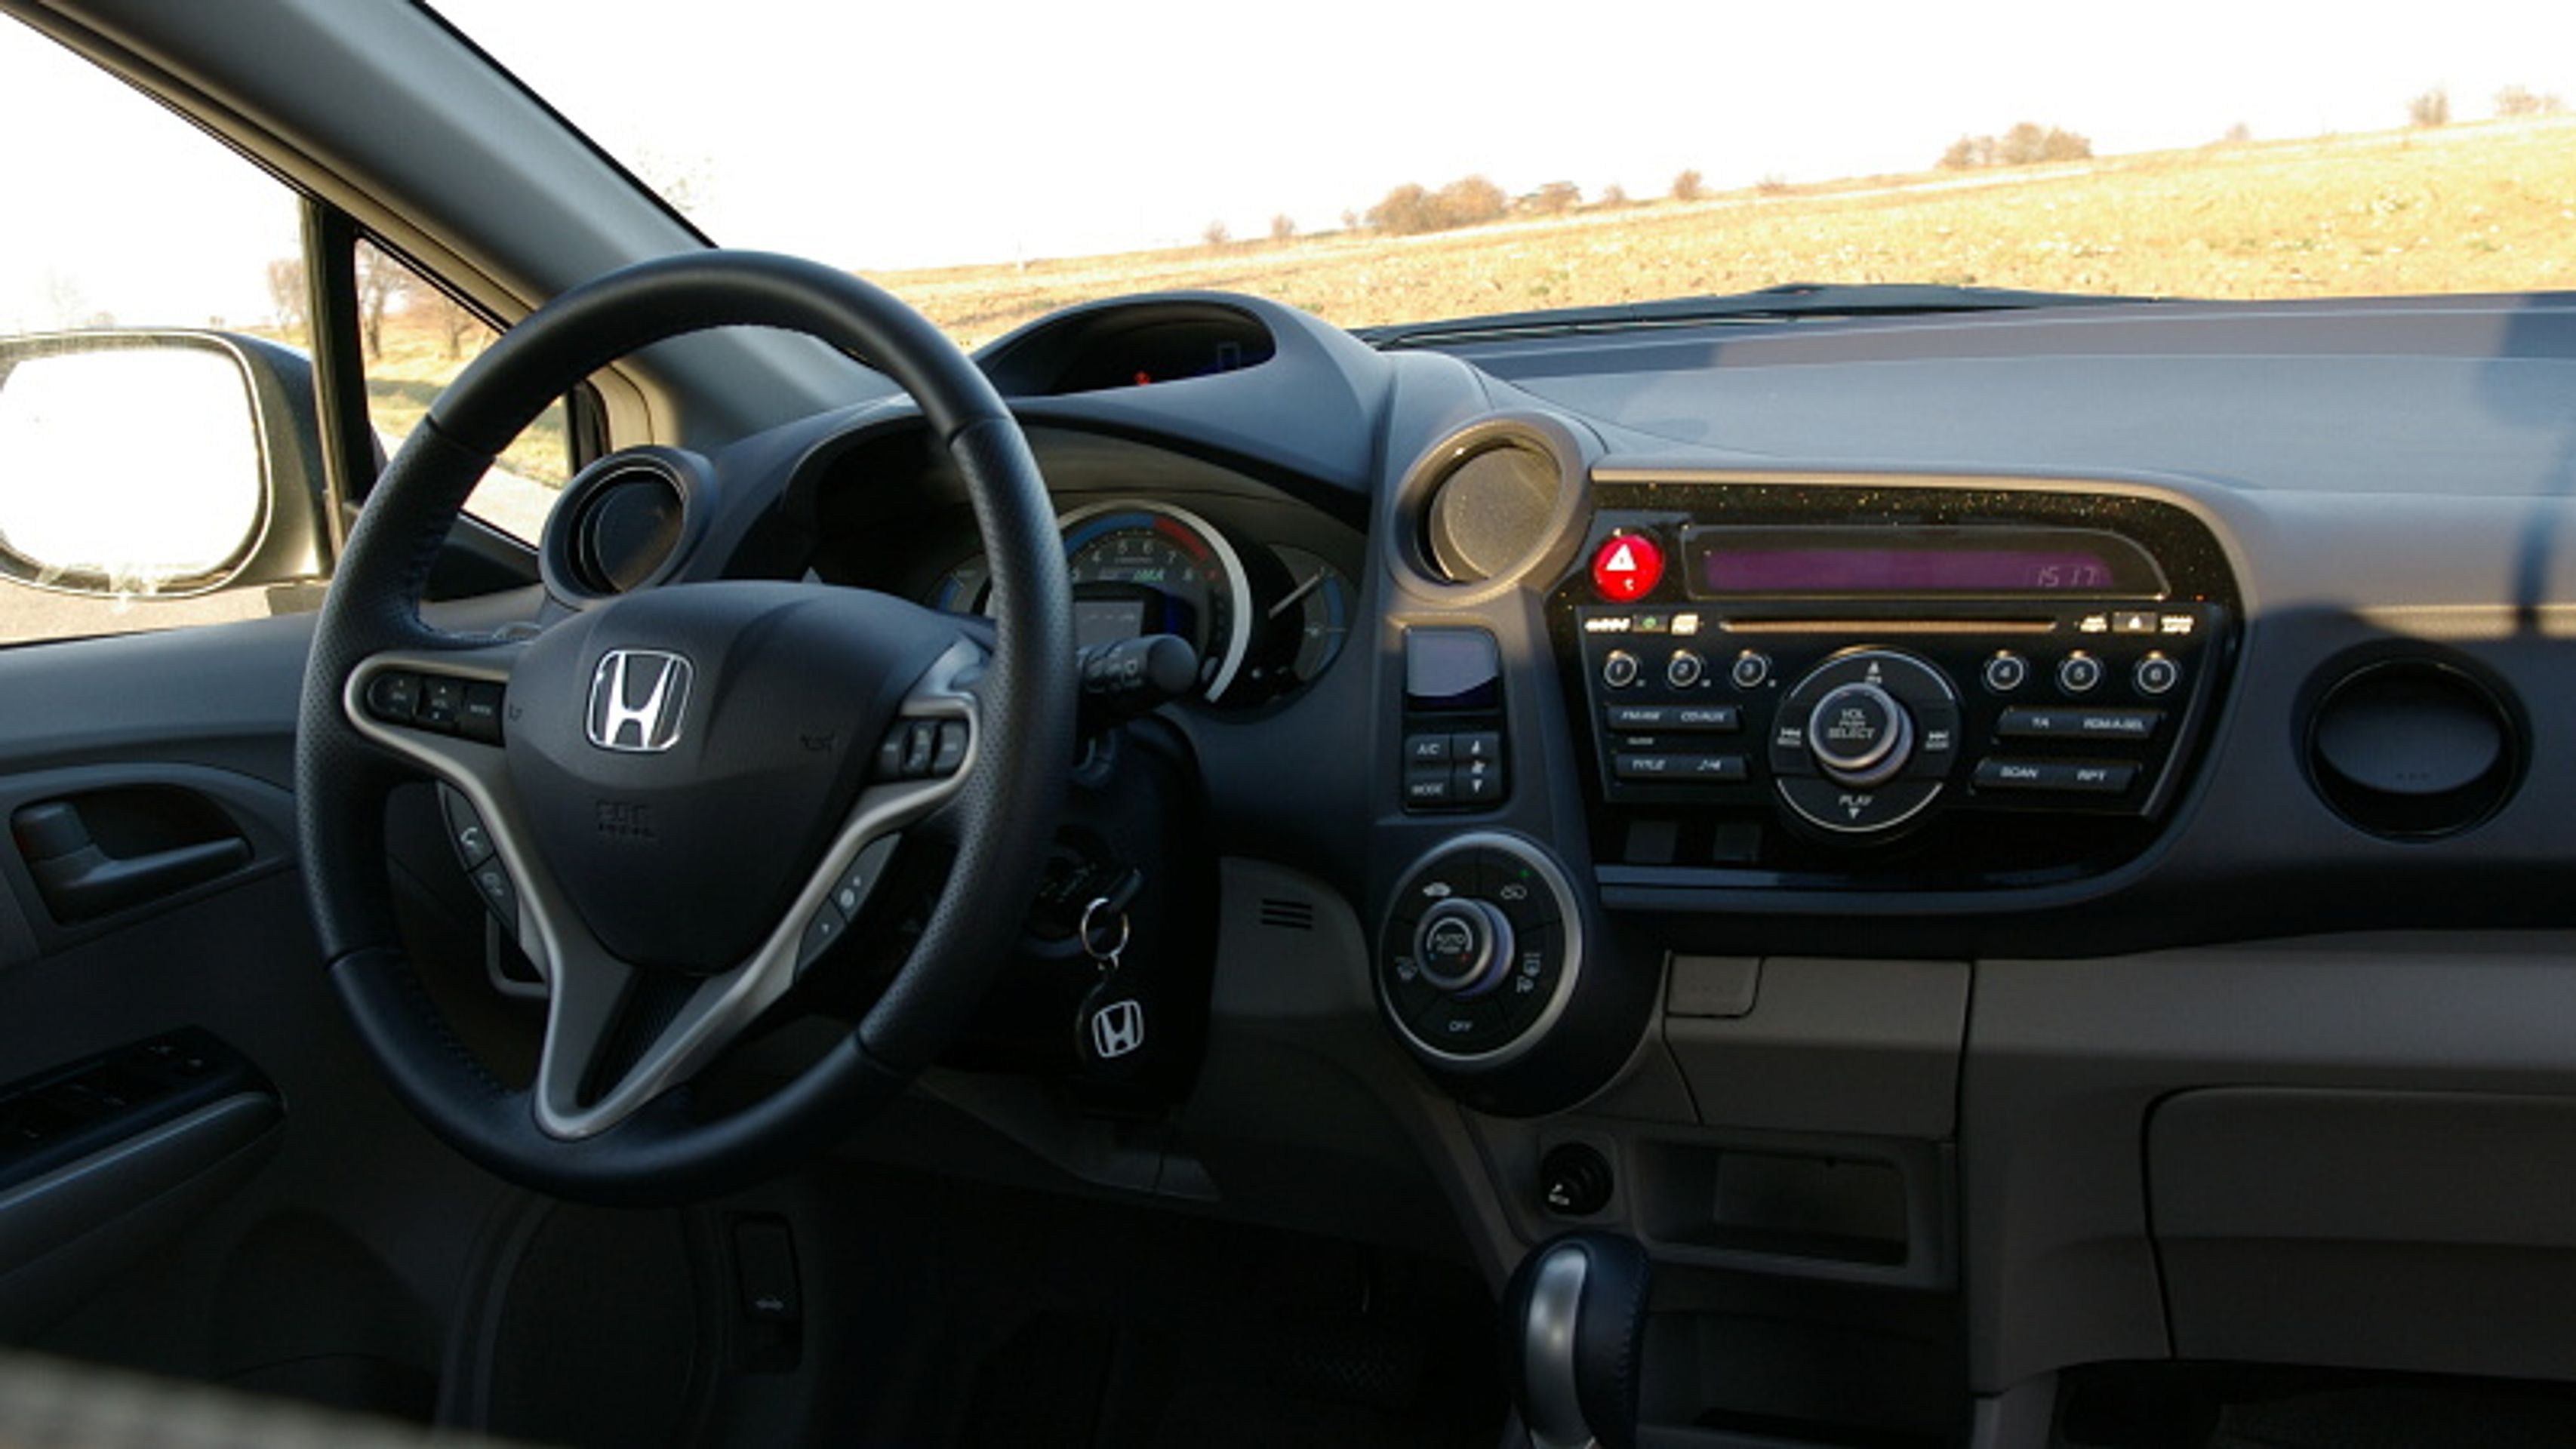 Honda Insight-5 - GALERIE Honda Insight (5/8)